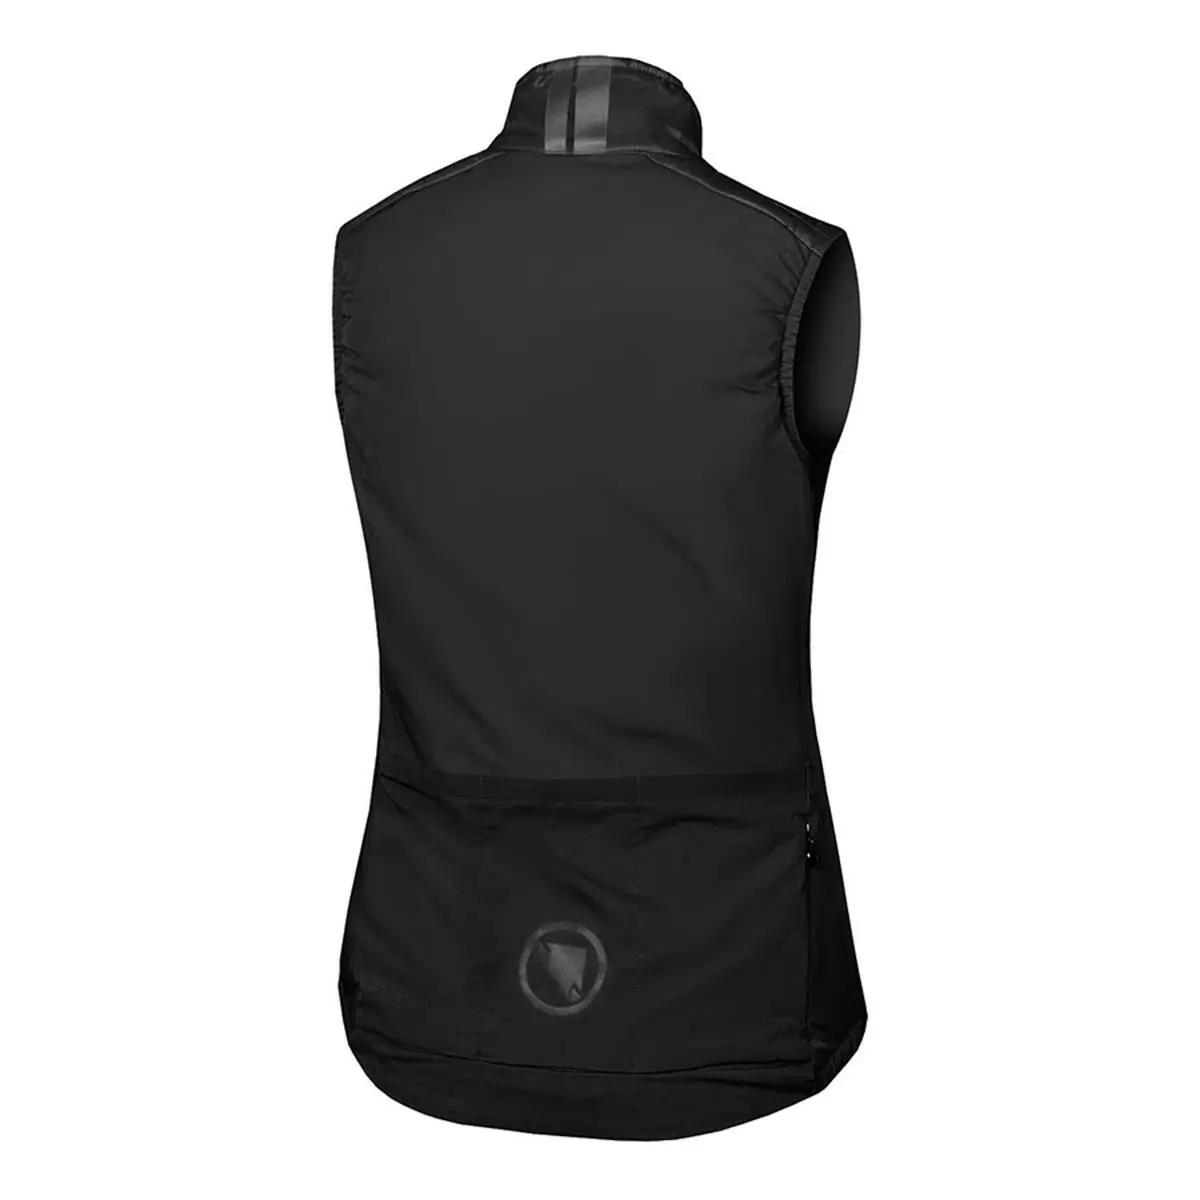 Pro SL PrimaLoft Rain/Windproof Vest Women's Vest Black size XL #1